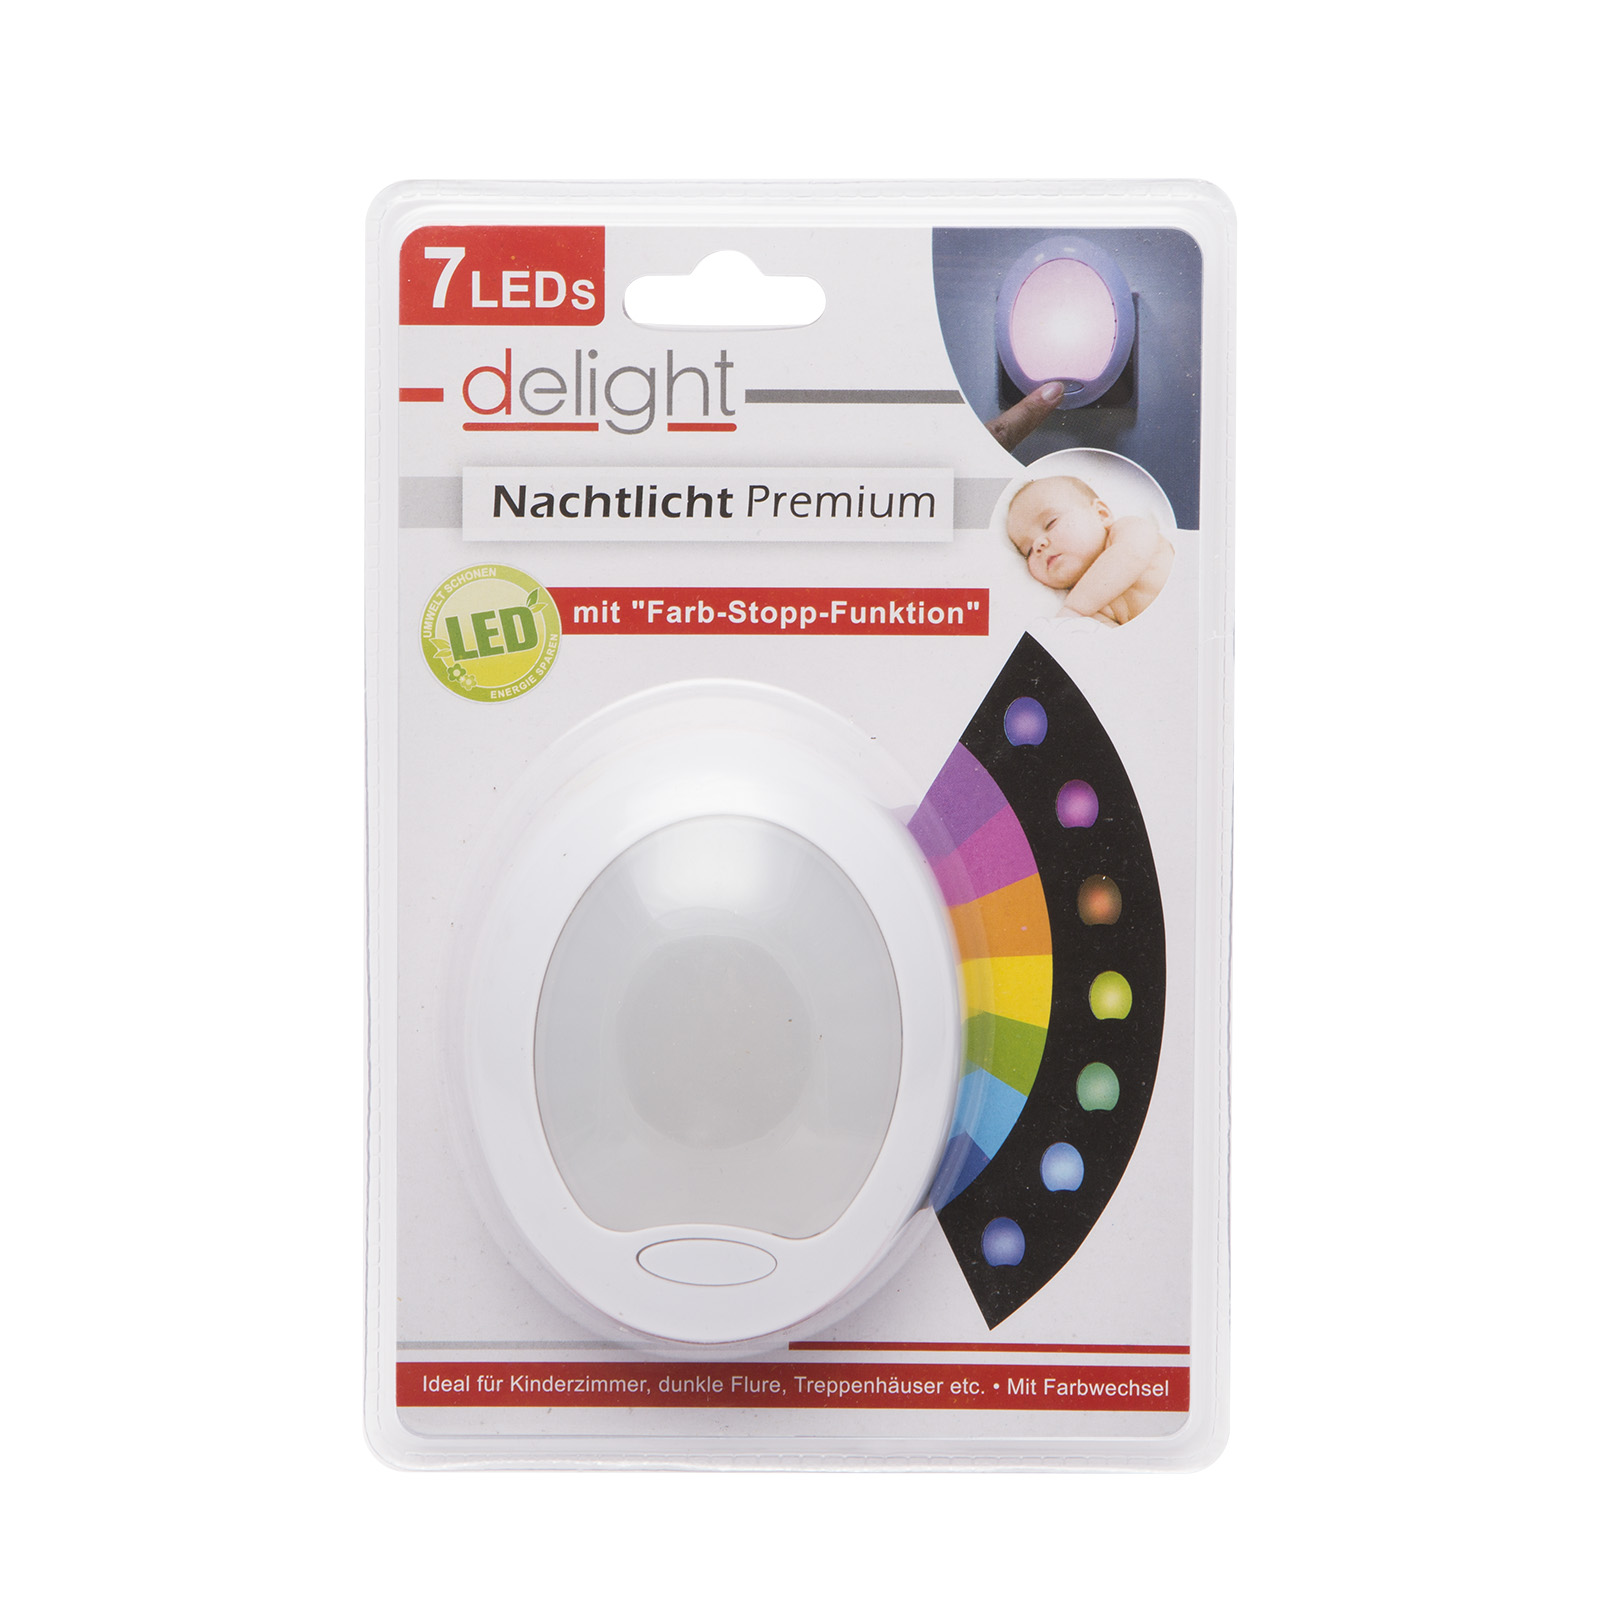 Lumina de veghe LED cu colori alternante Premium 